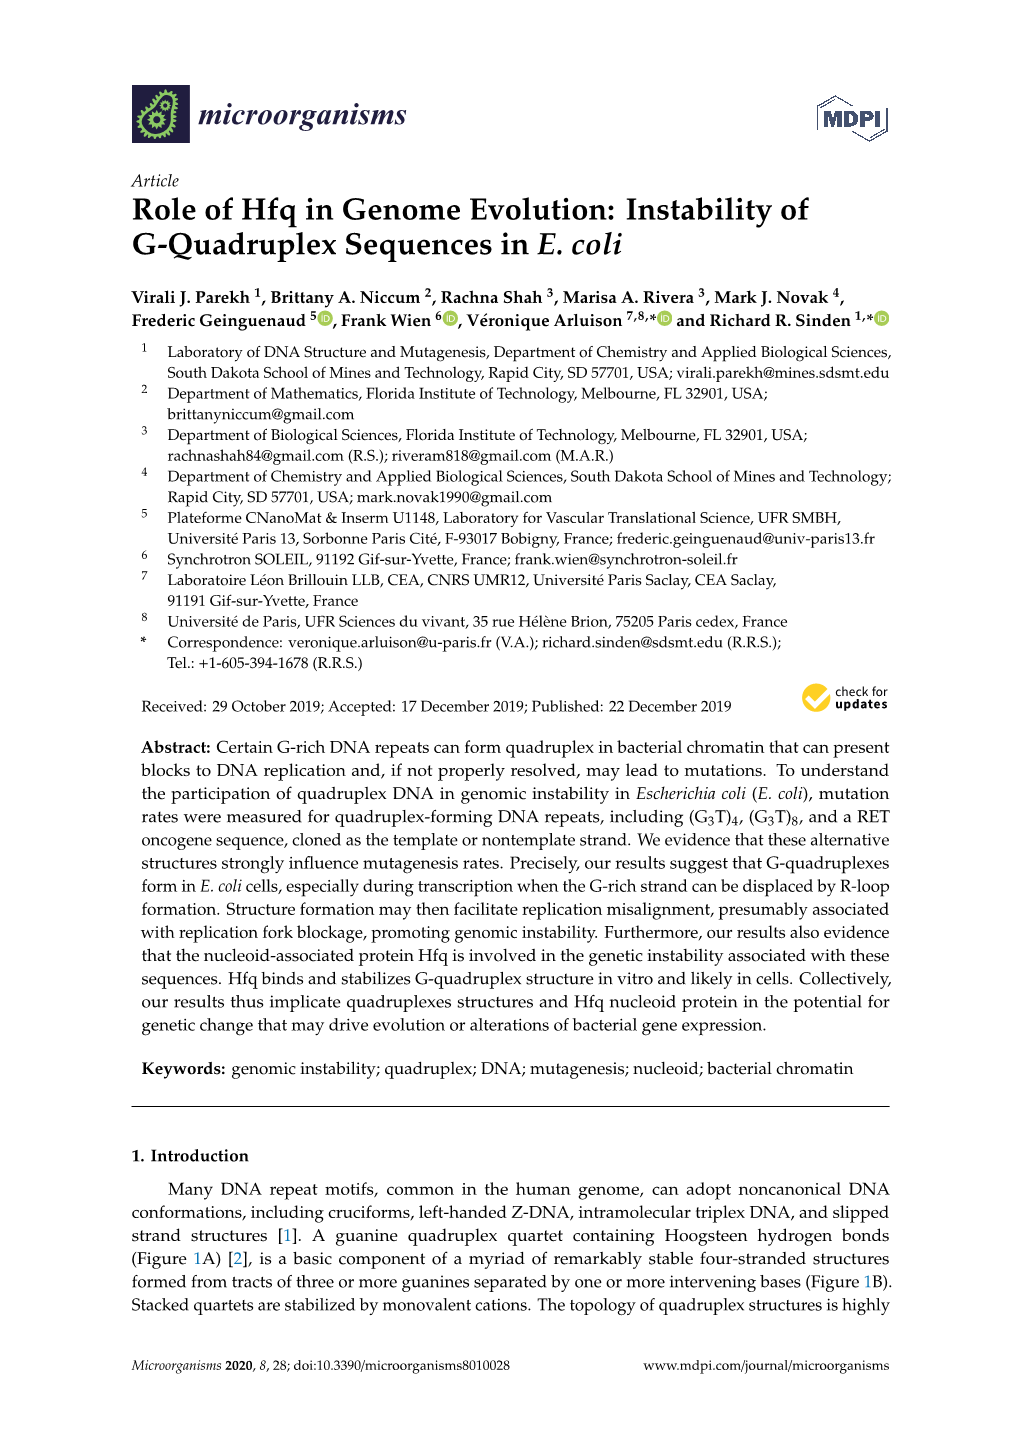 Instability of G-Quadruplex Sequences in E. Coli